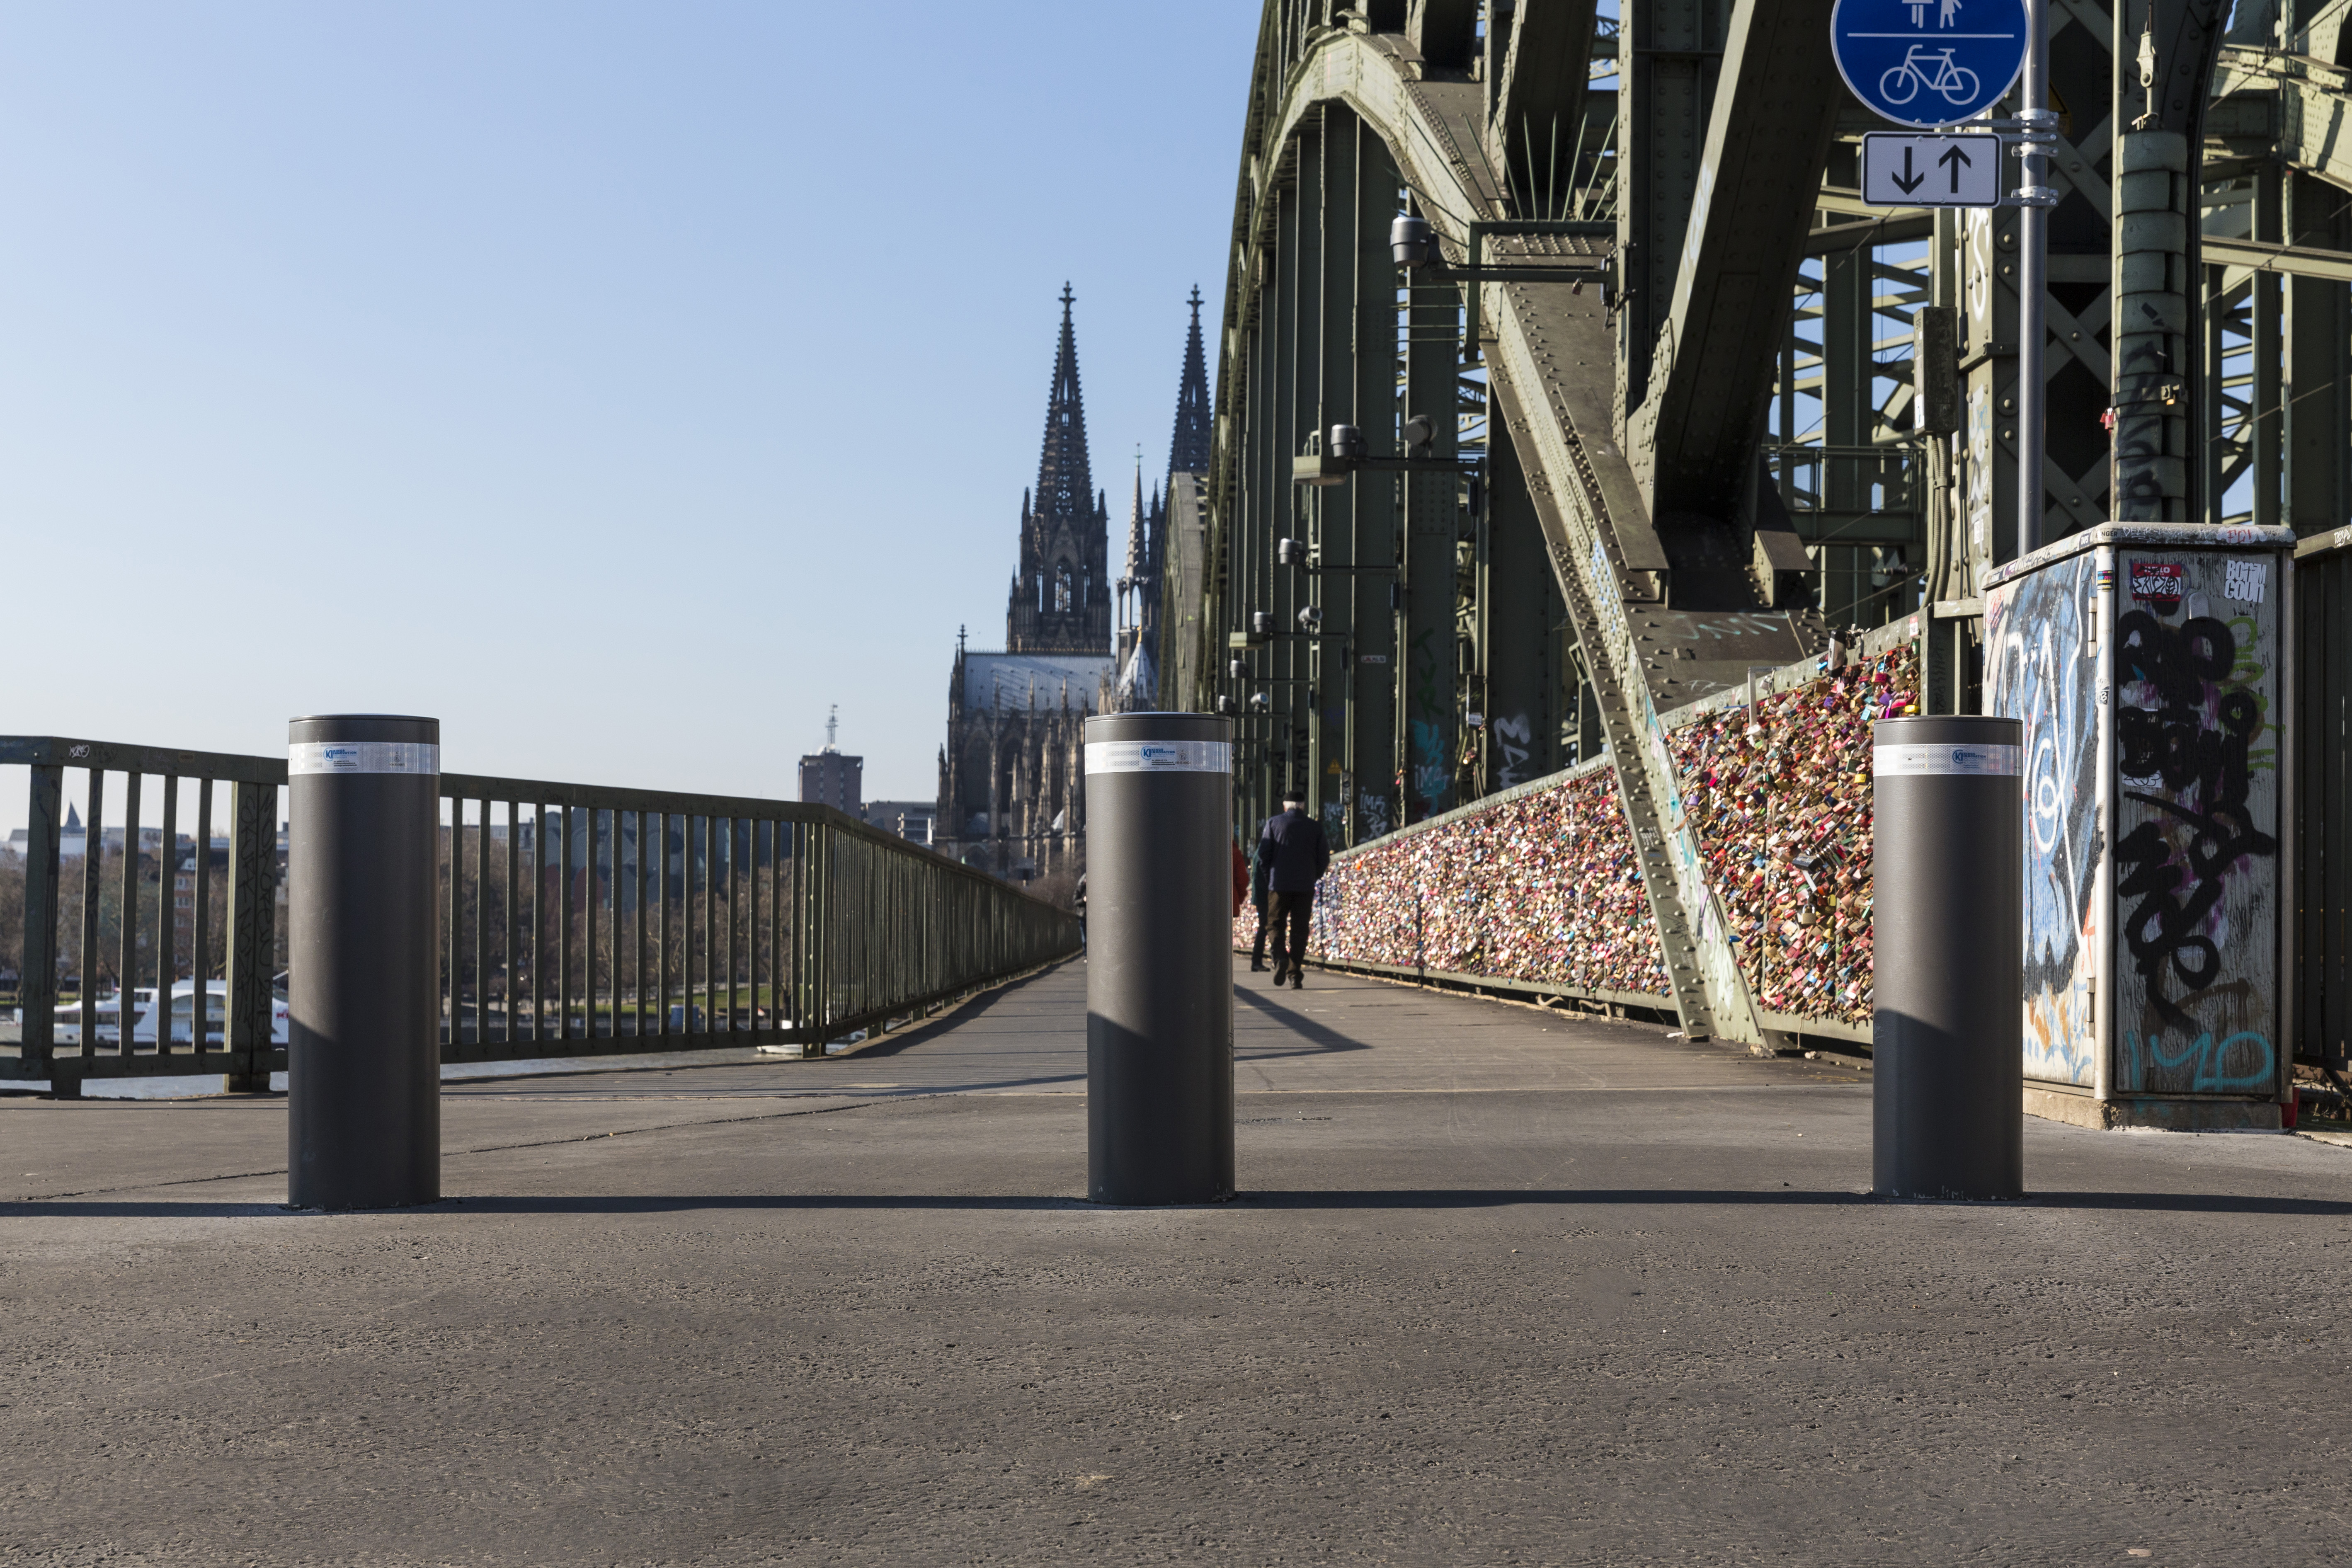 Einbetonierte Pöller an der Hohenzollernbrücke in Köln